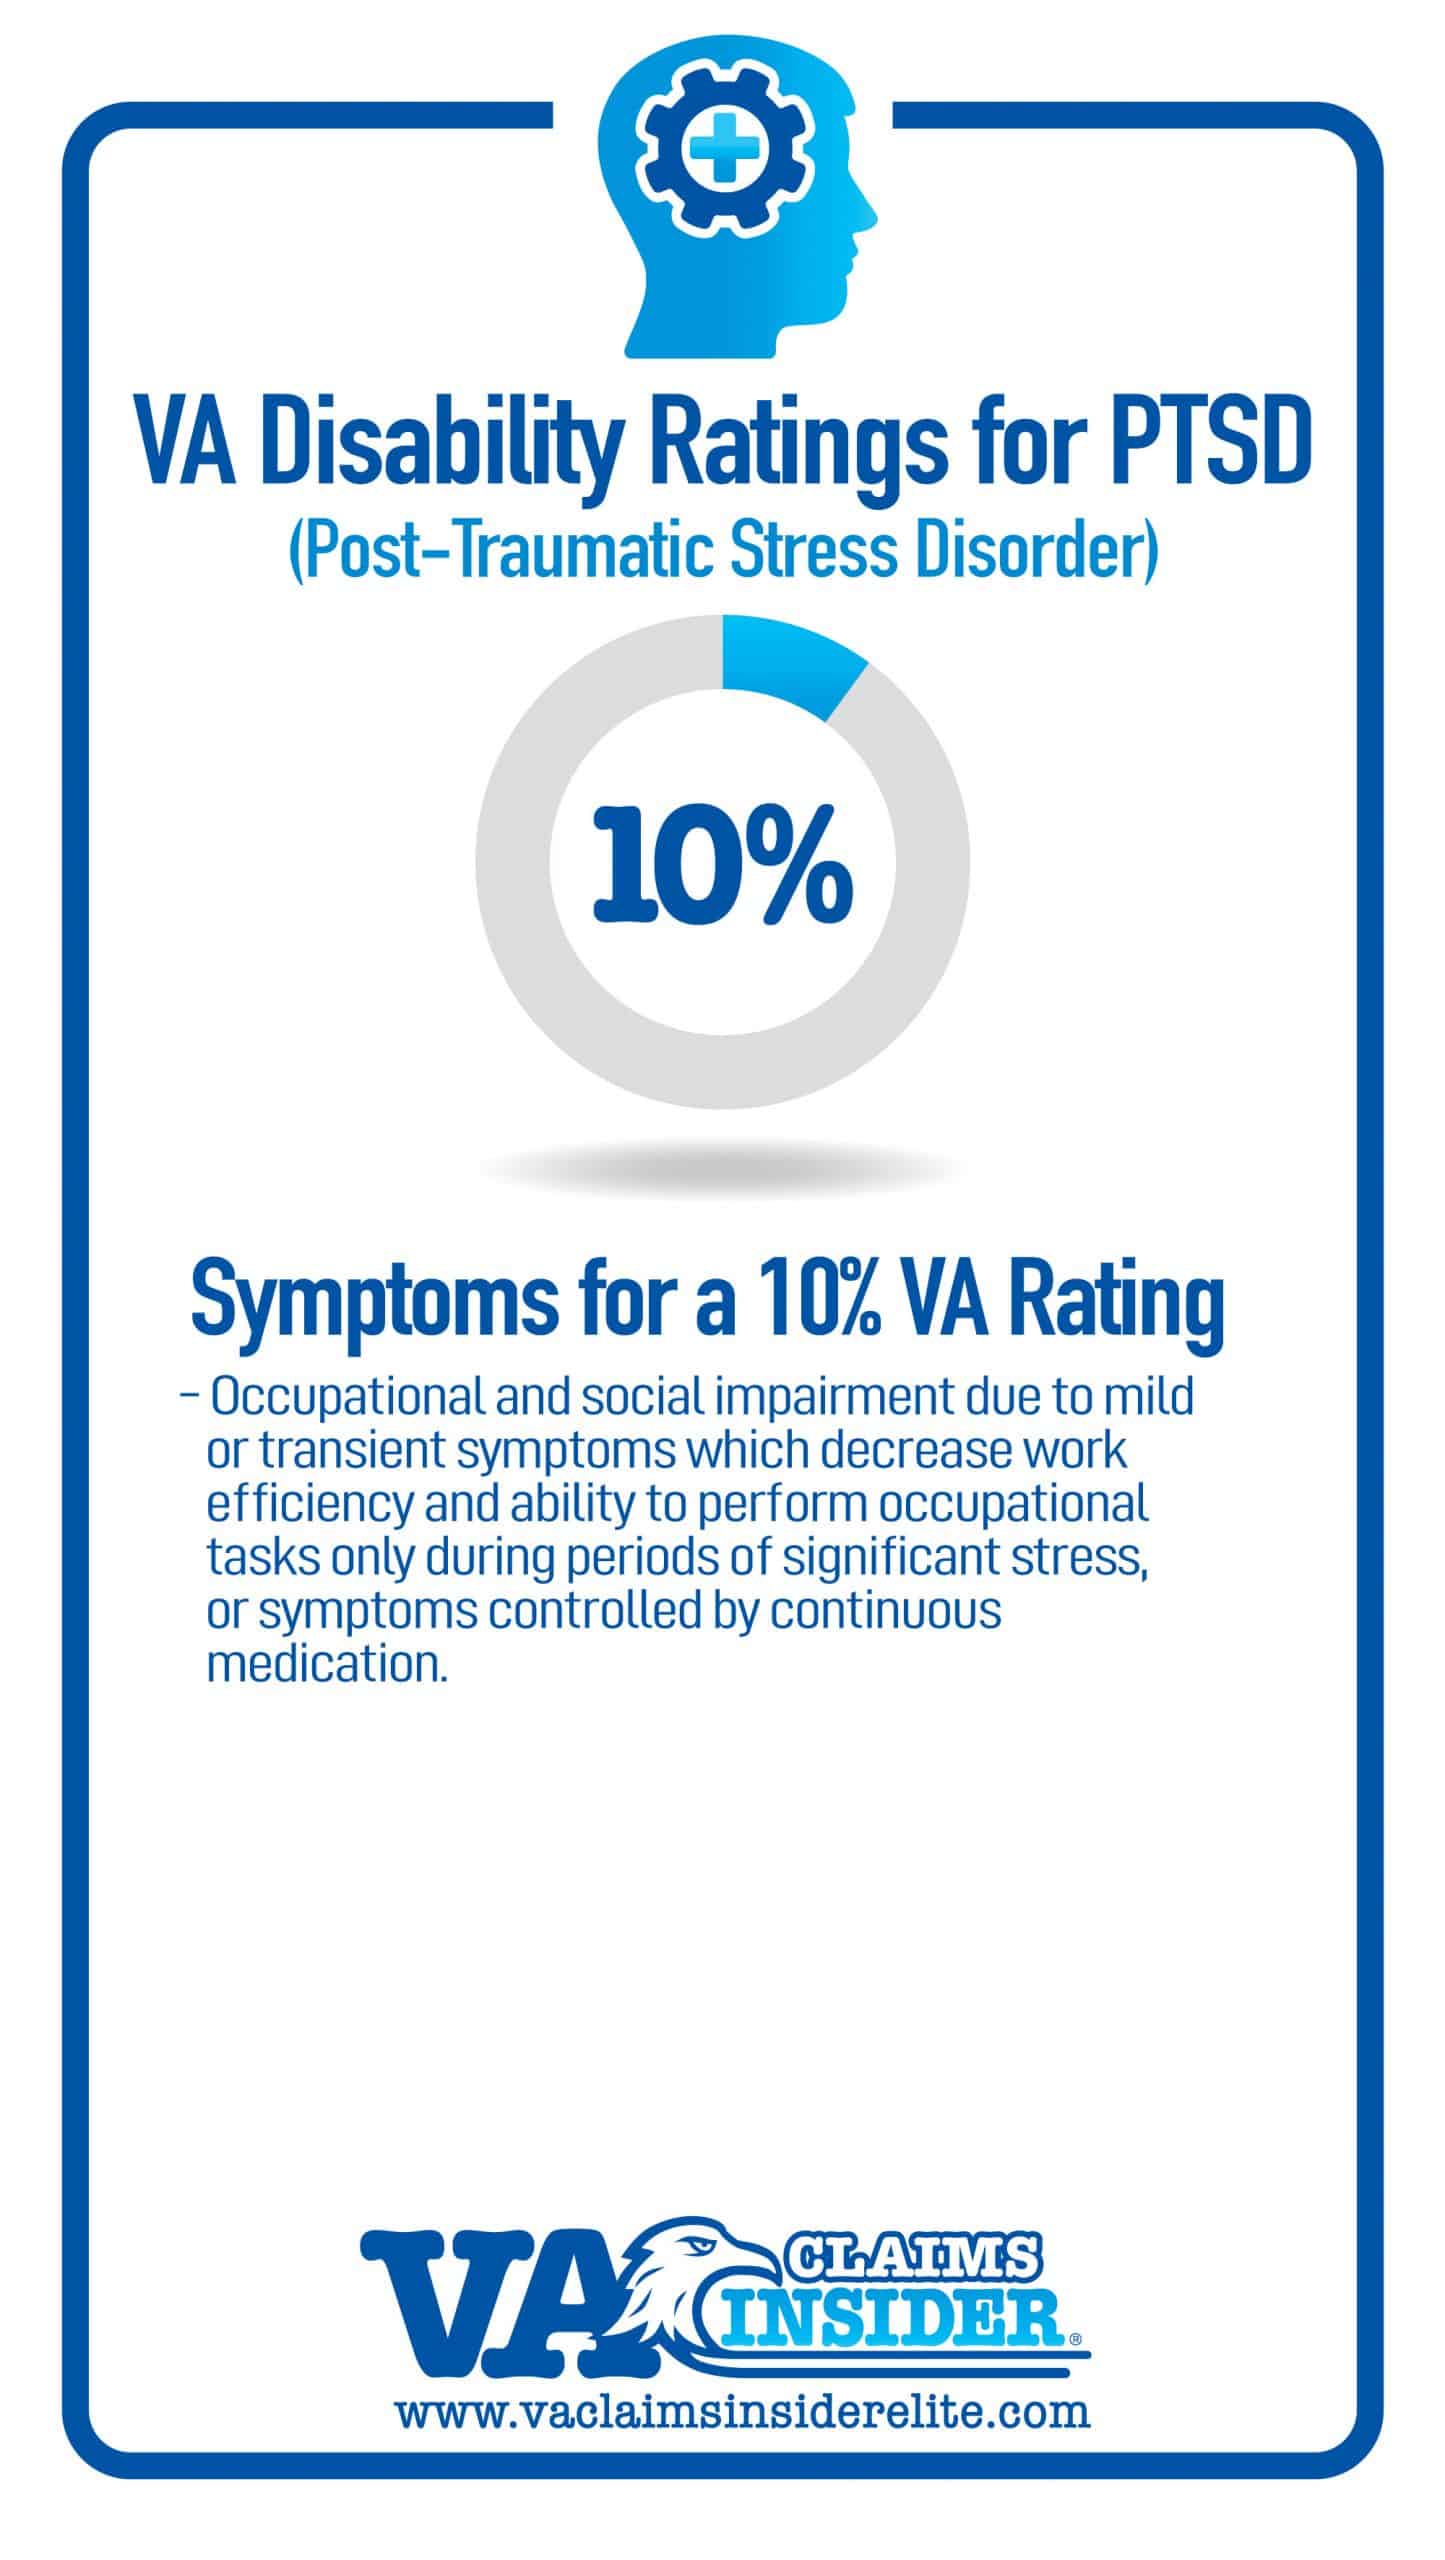 Symptoms of 10% VA Rating for PTSD